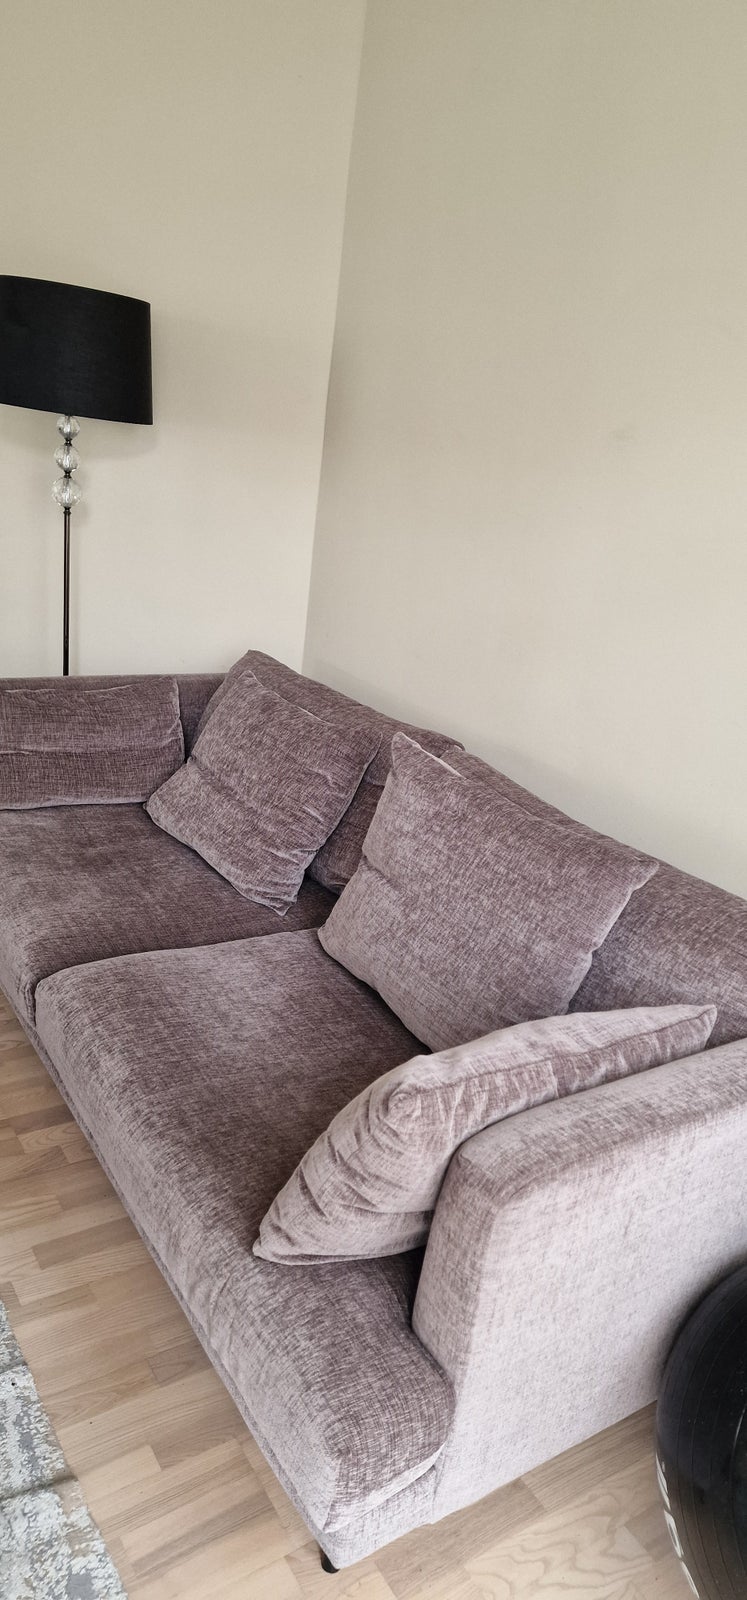 Sofa, anden størrelse